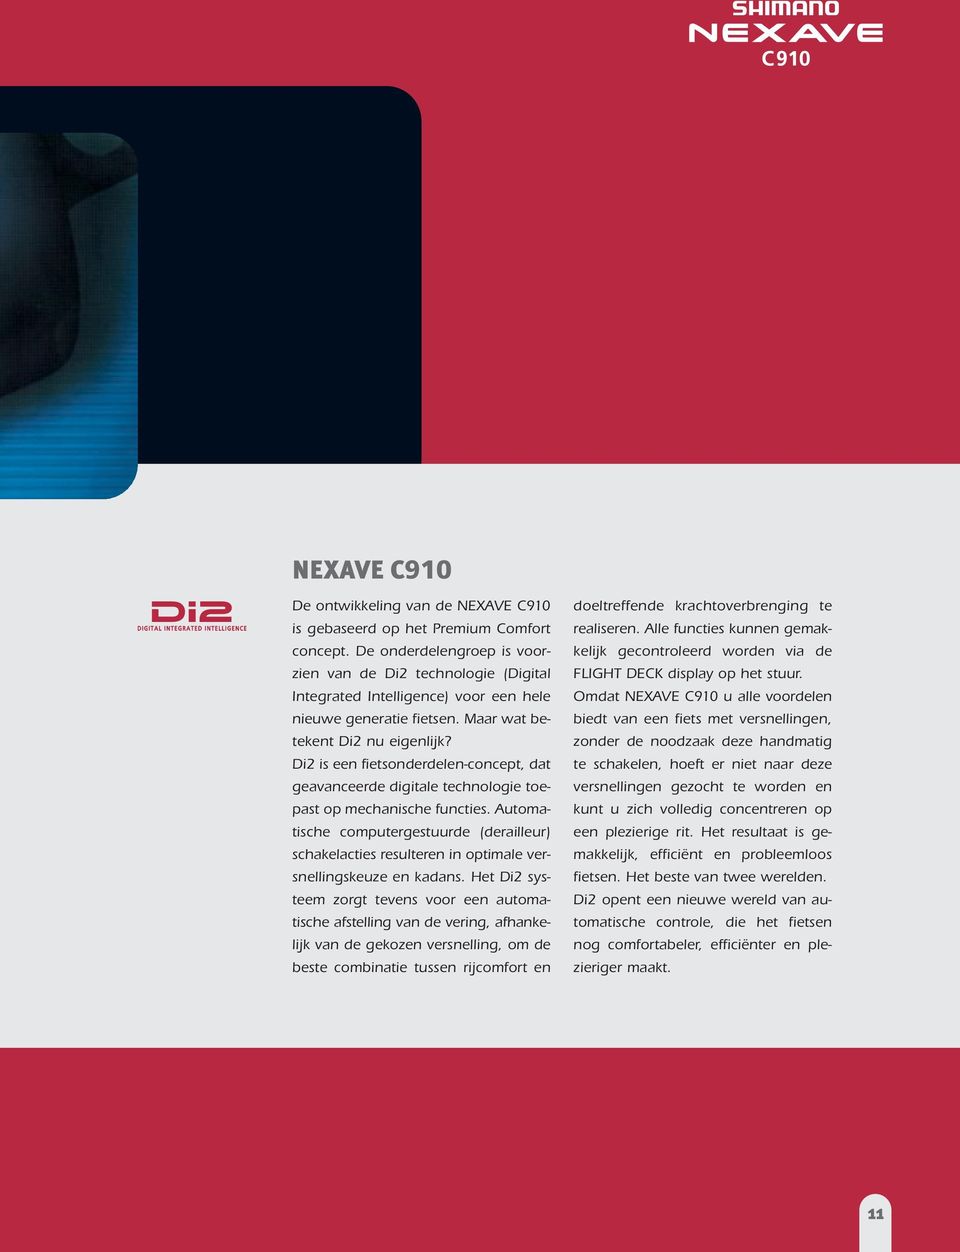 Di2 is een fietsonderdelen-concept, dat geavanceerde digitale technologie toepast op mechanische functies.